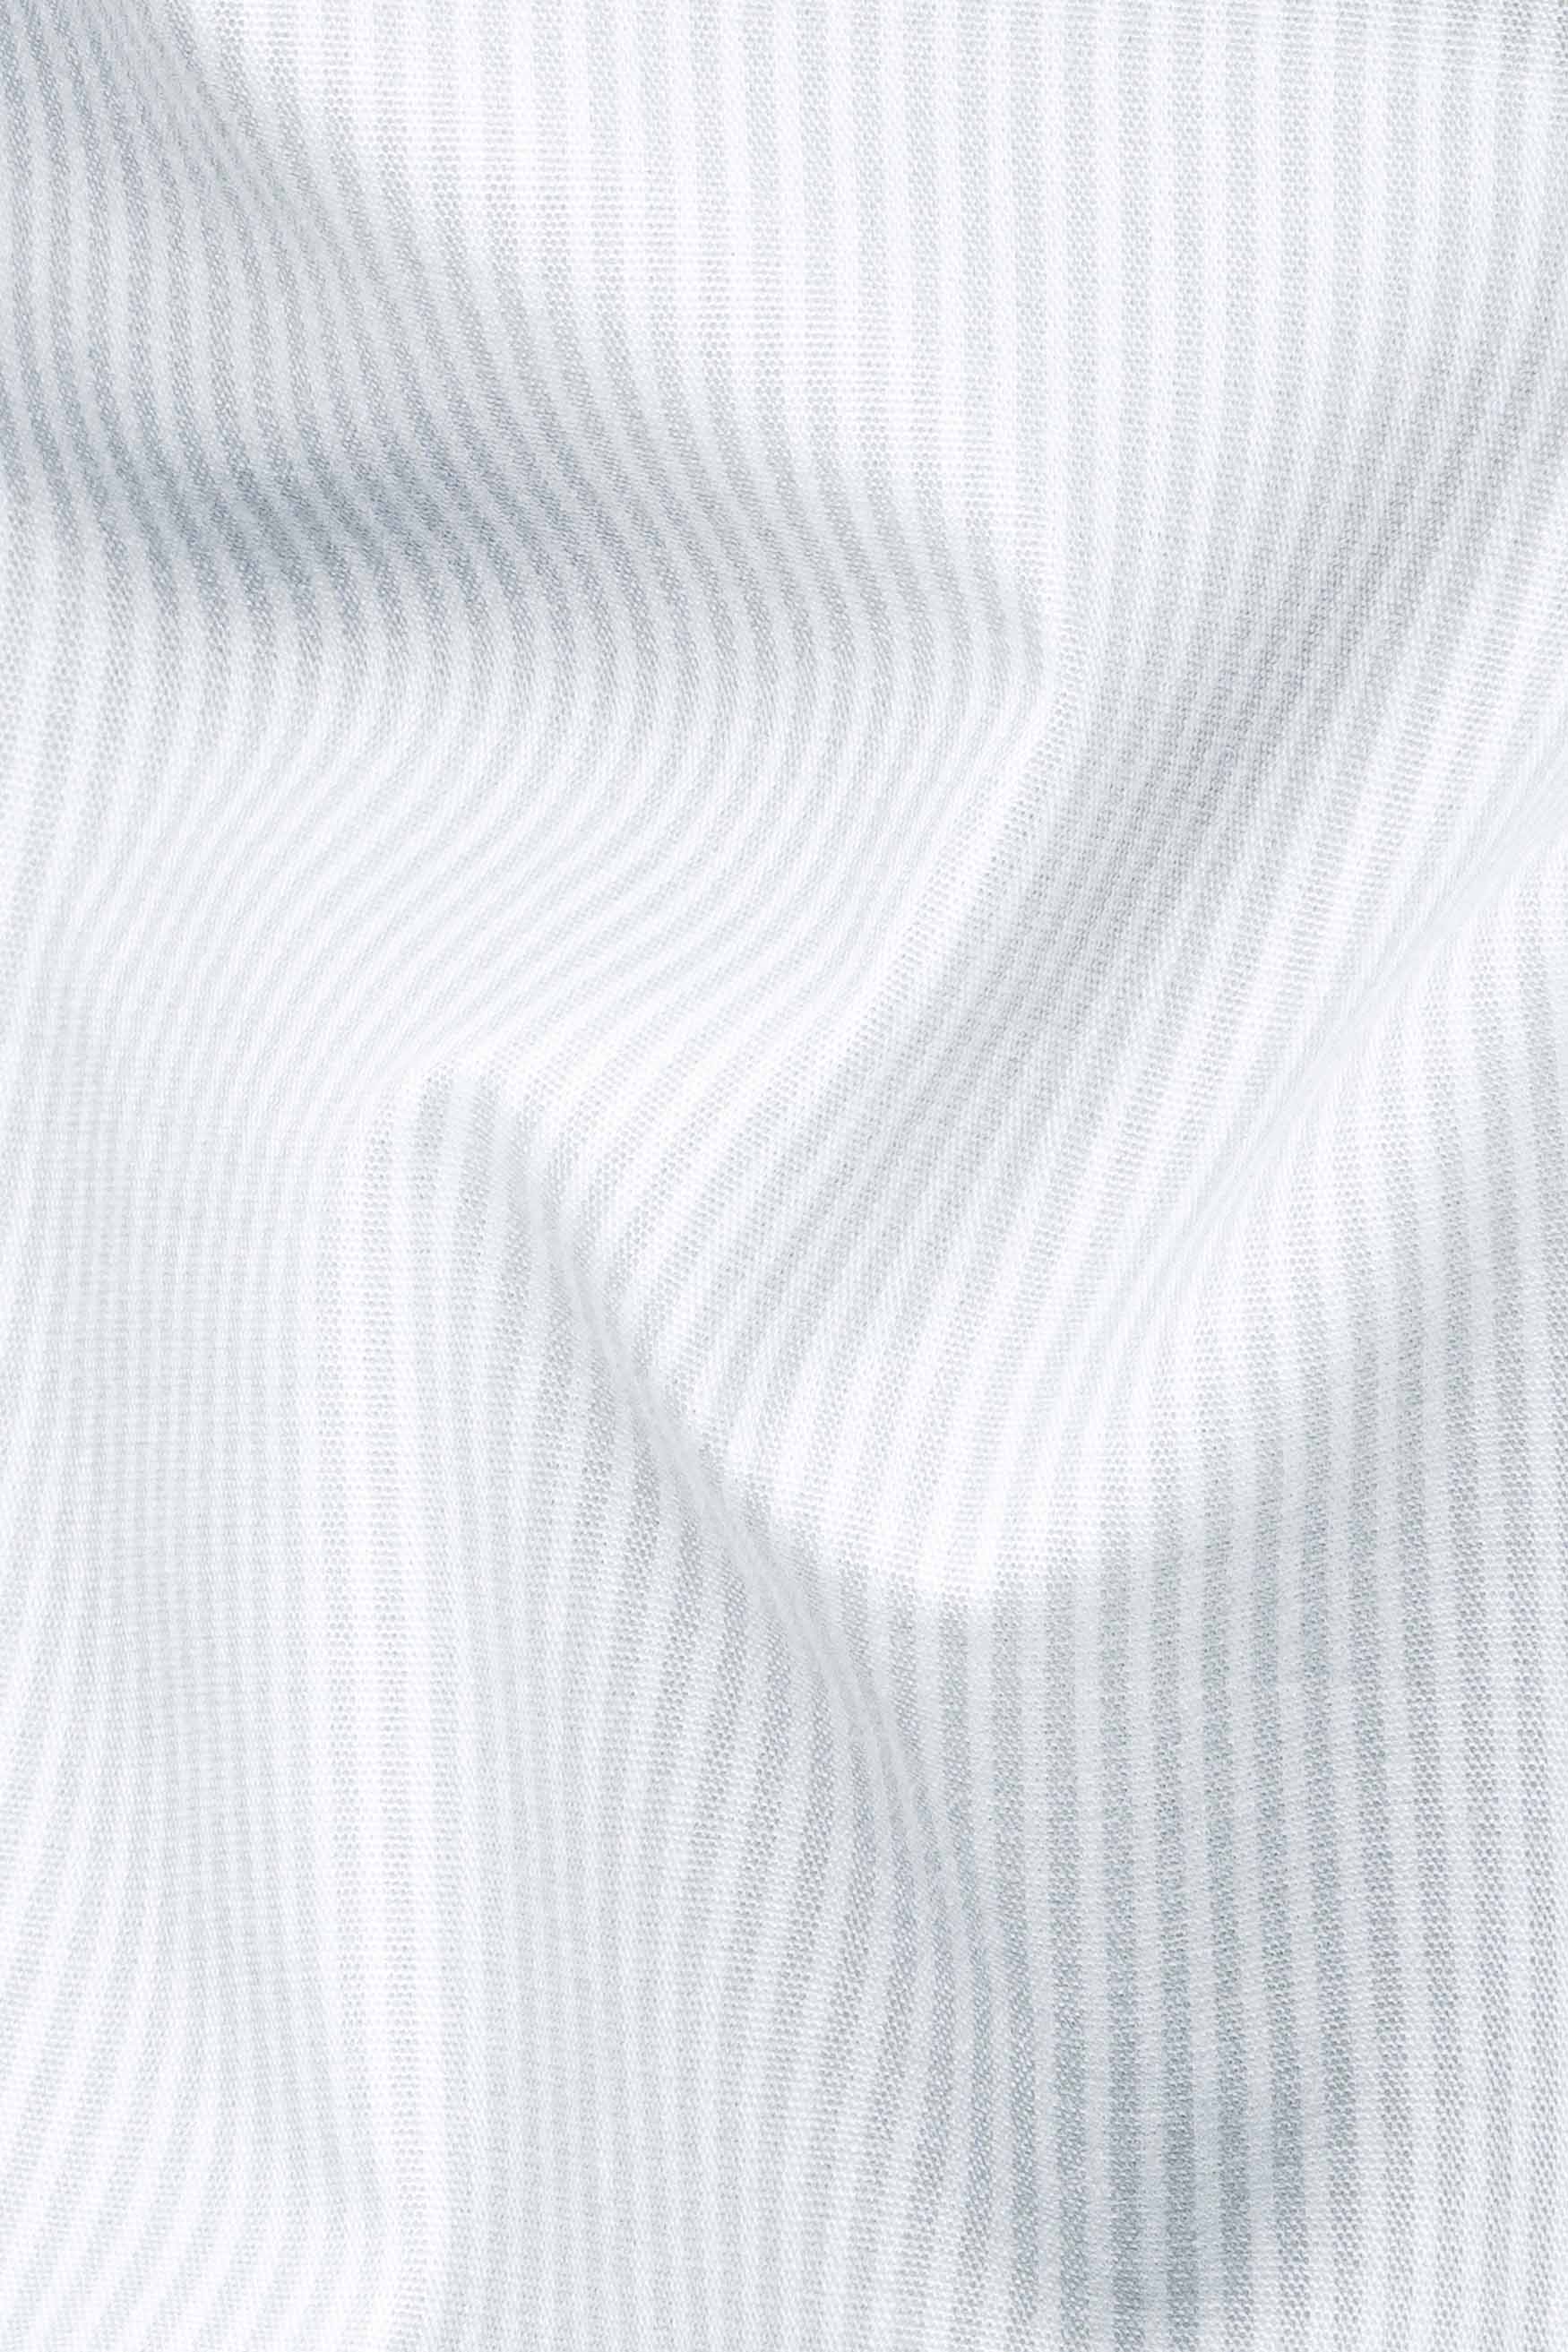 Gainsboro Gray and White Pinstriped Premium Cotton Shirt